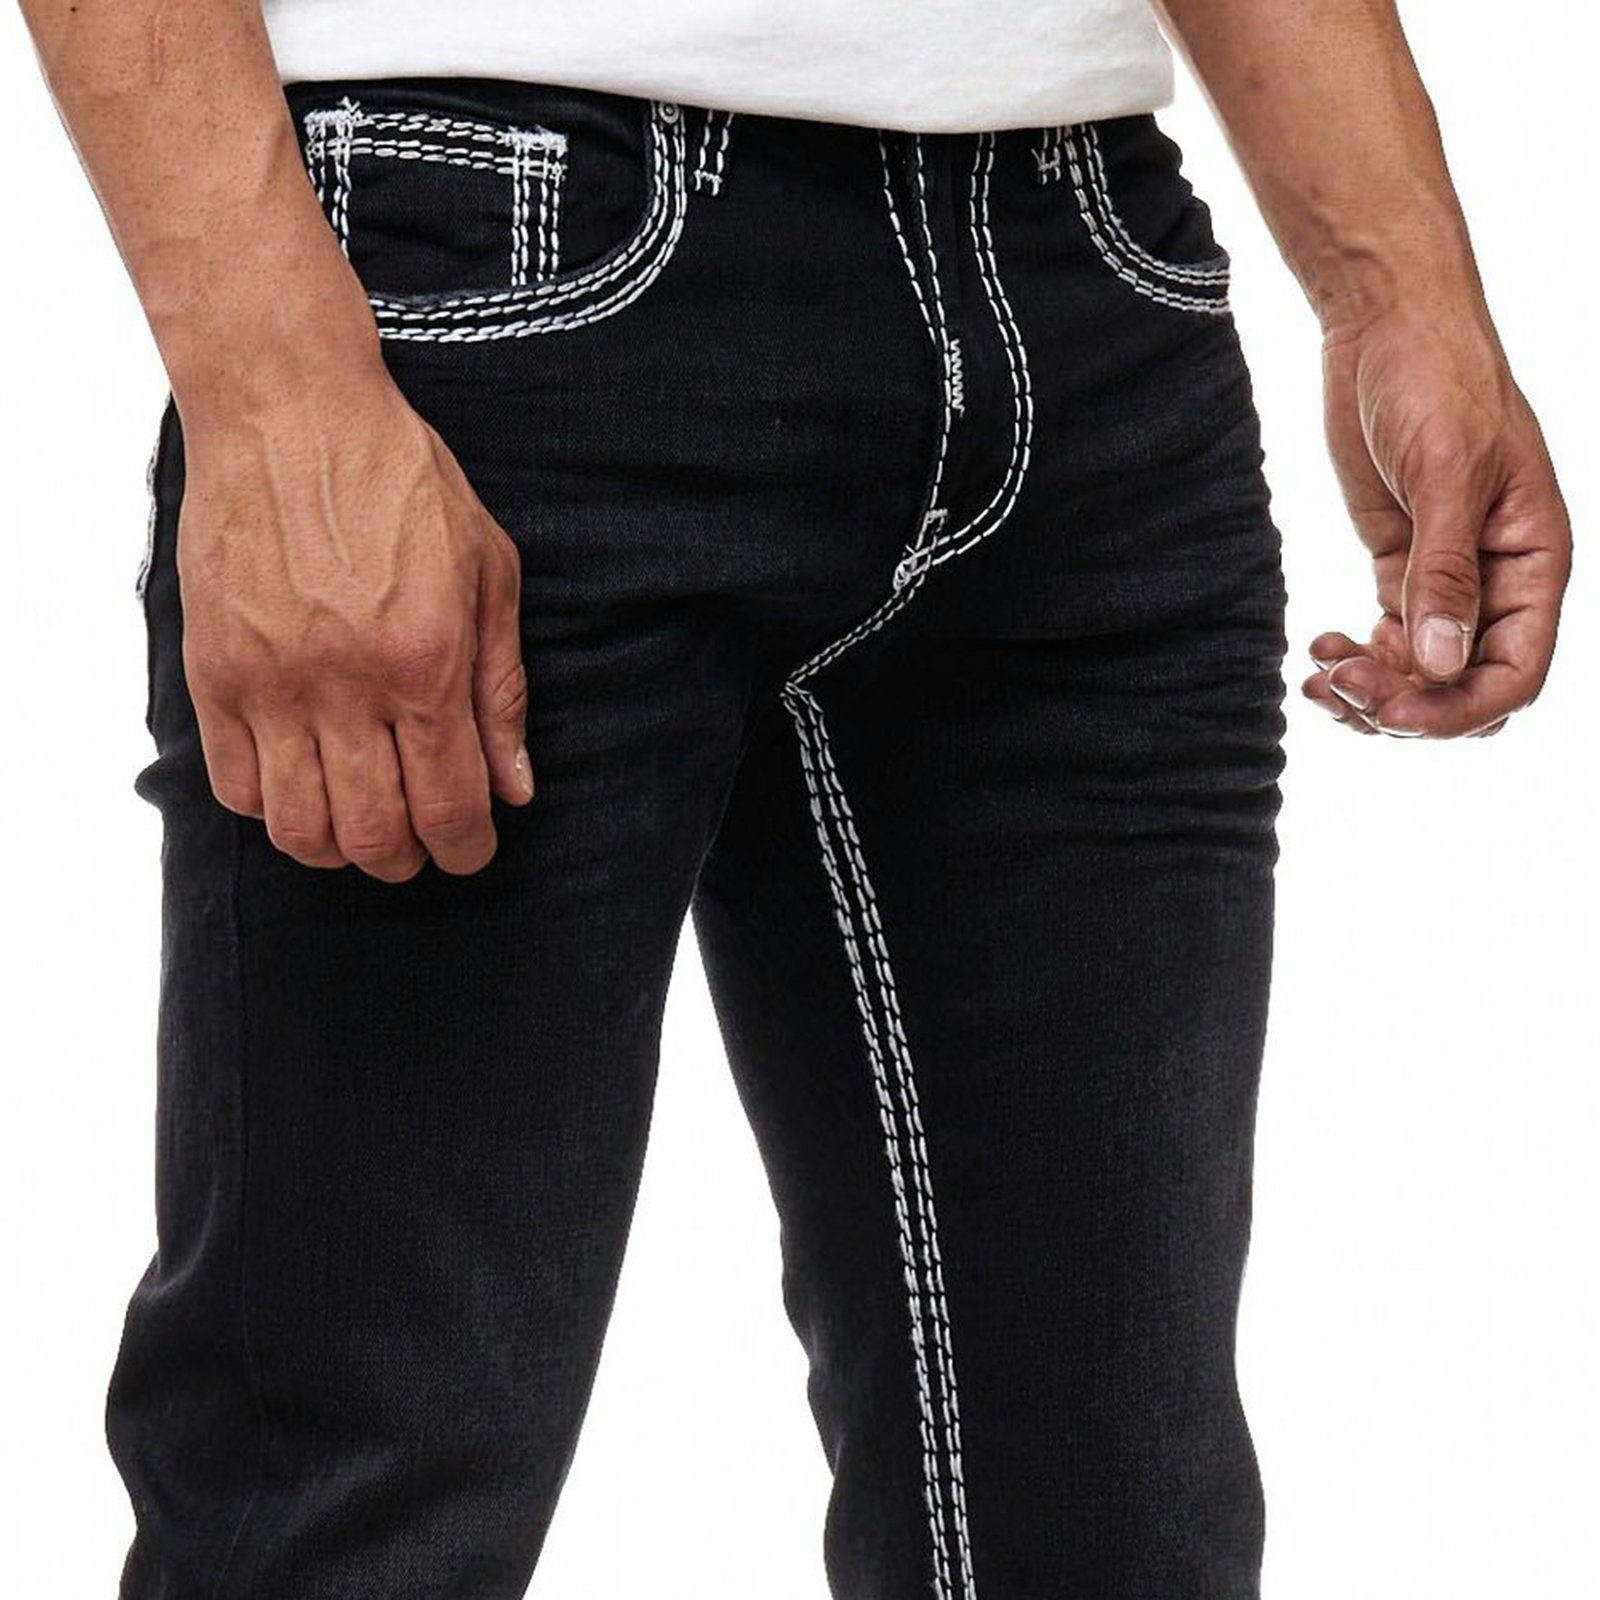 dezenter Waschung Neal Rusty schwarz, weiß Regular-fit-Jeans mit